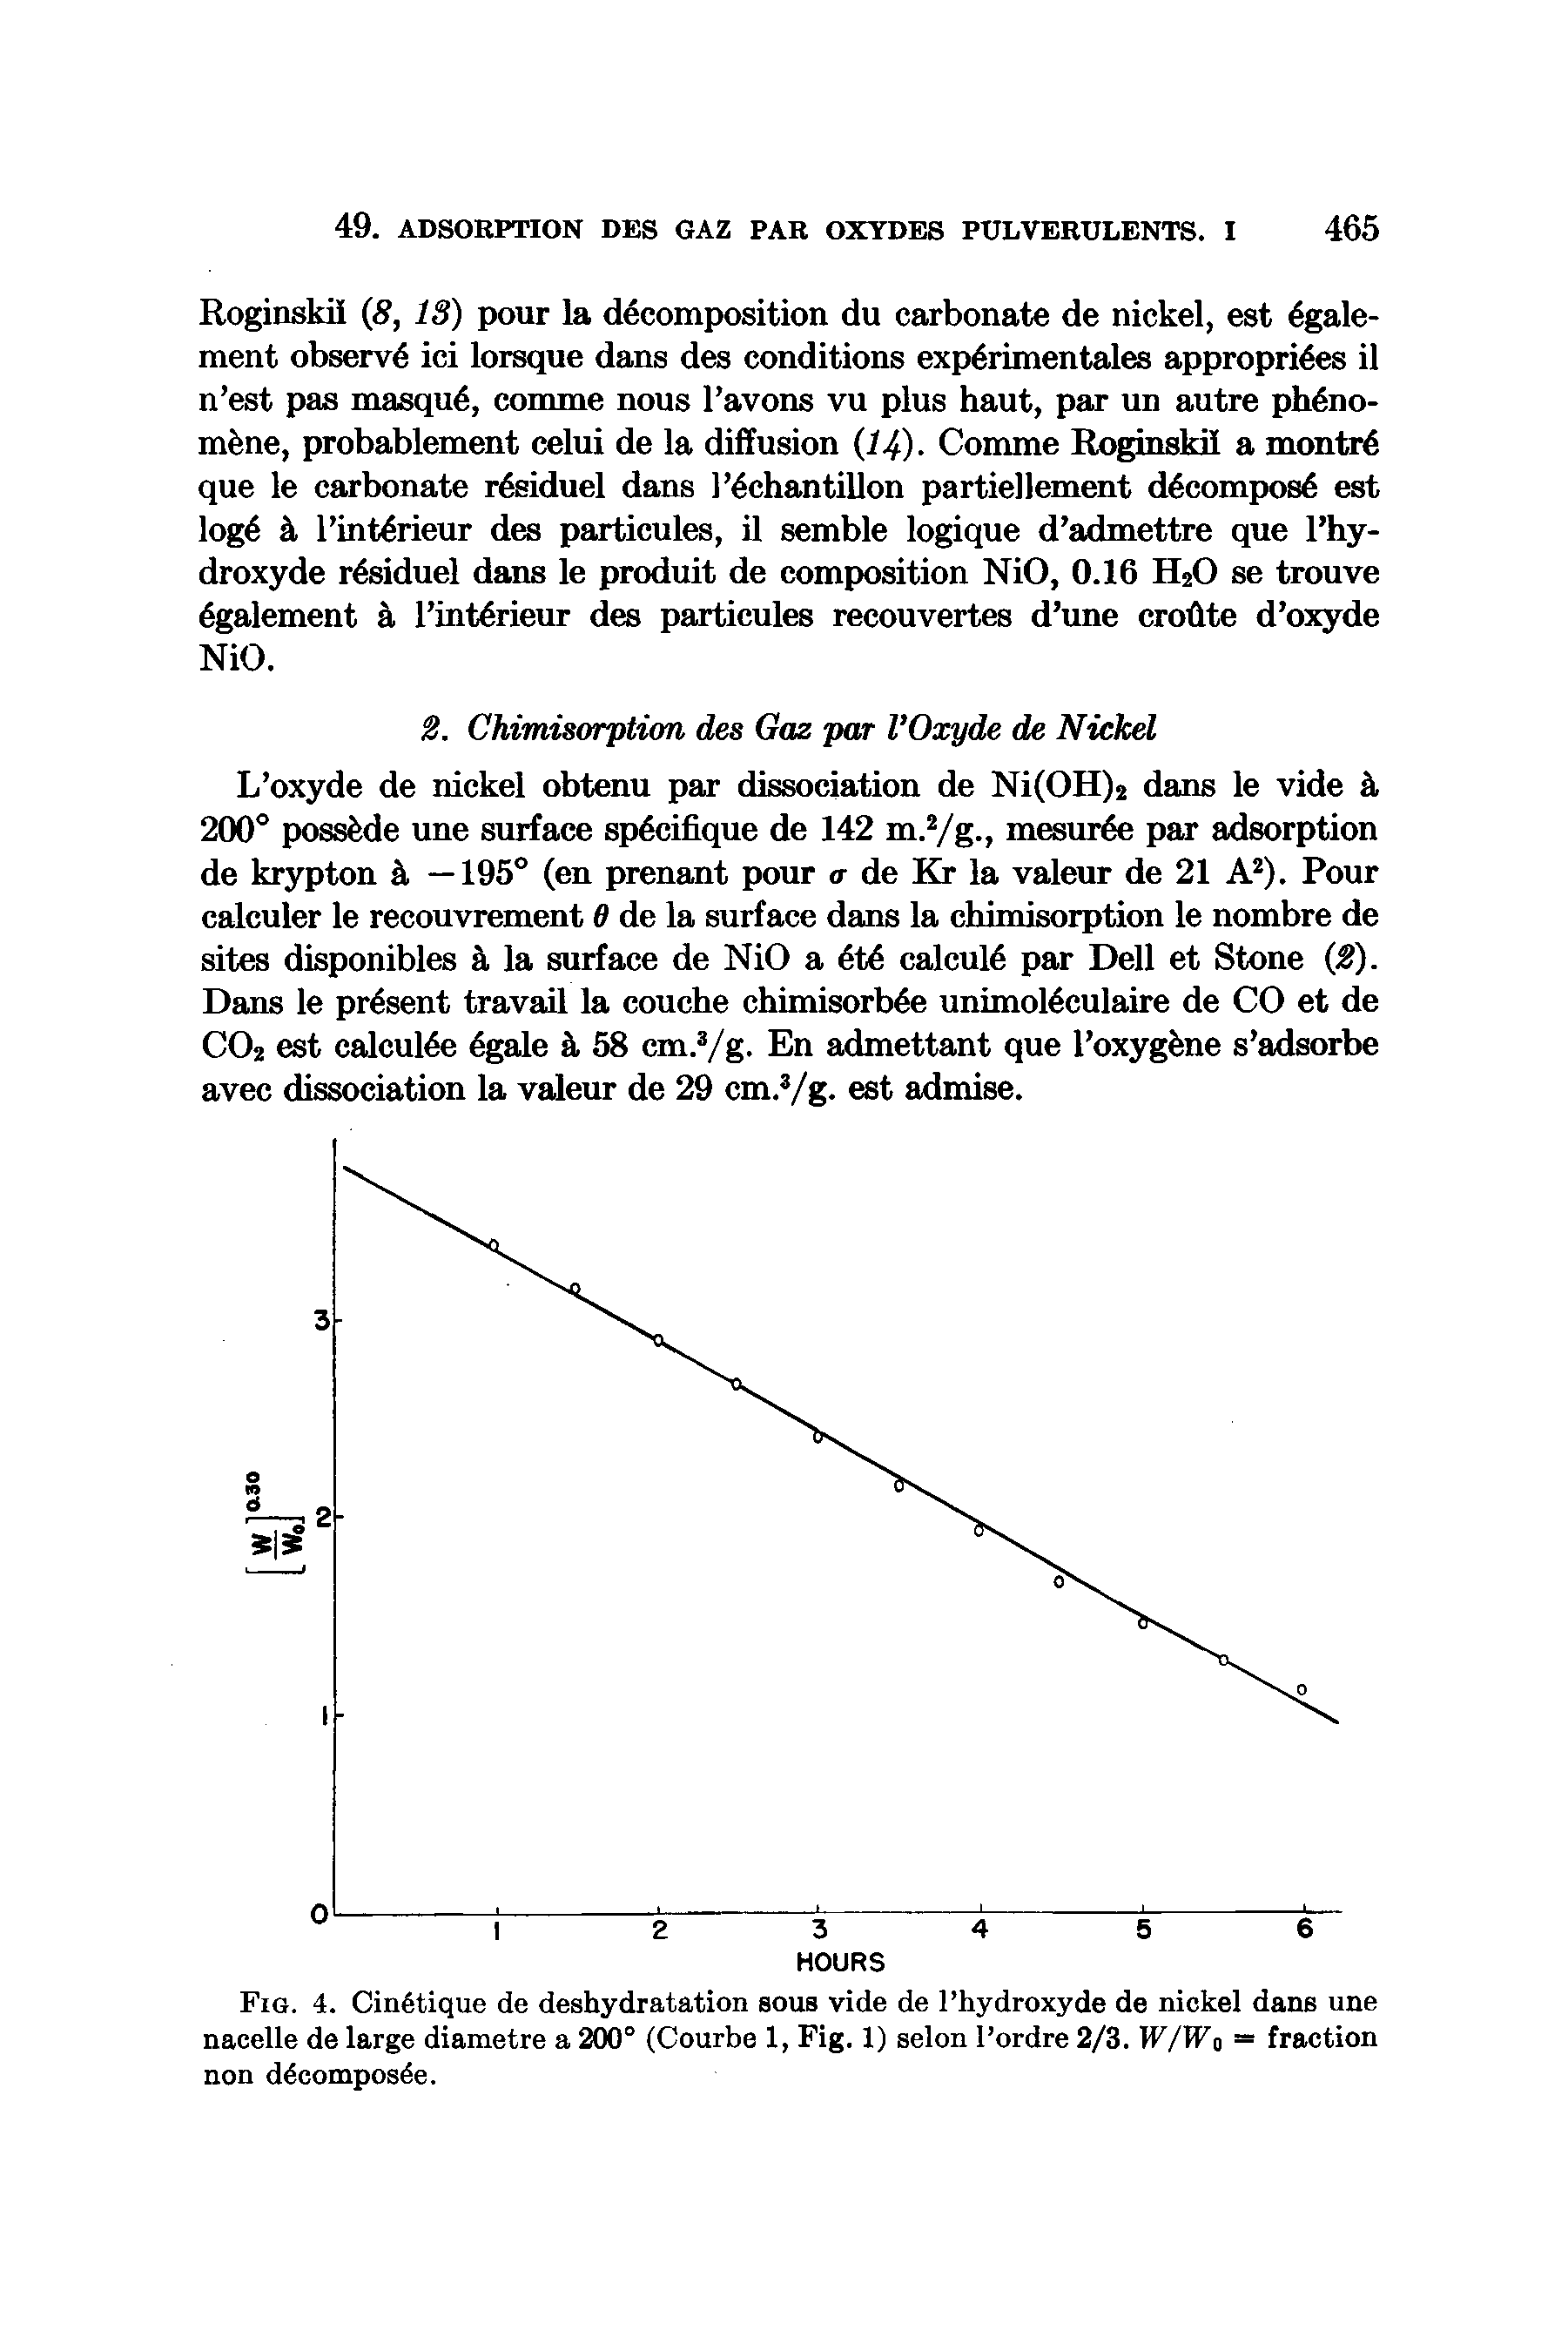 Fig. 4. Cin6tique de deshydratation sous vide de I hydroxyde de nickel dans une nacelle de large diametre a 200° (Courbe 1, Fig. 1) selon I ordre 2/3. IF/TFo = fraction non ddcompos e.